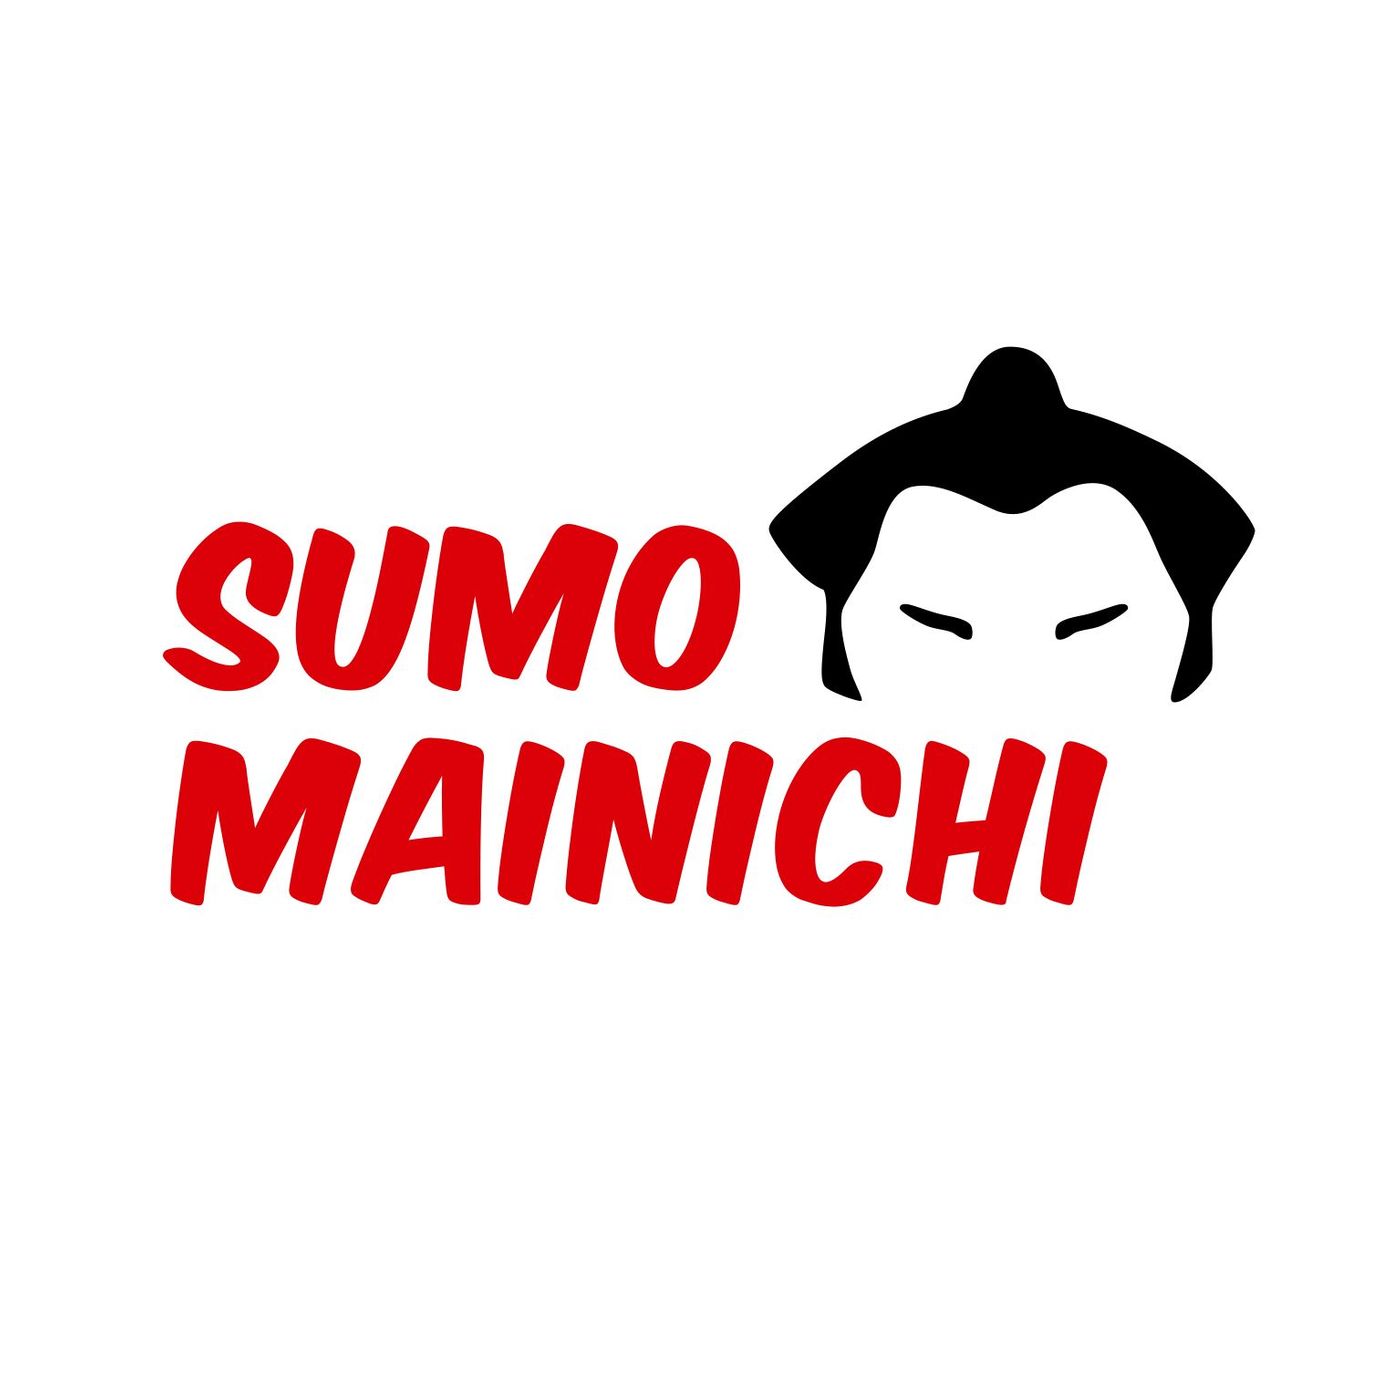 Sumo Mainichi - Day 3 - May 2022